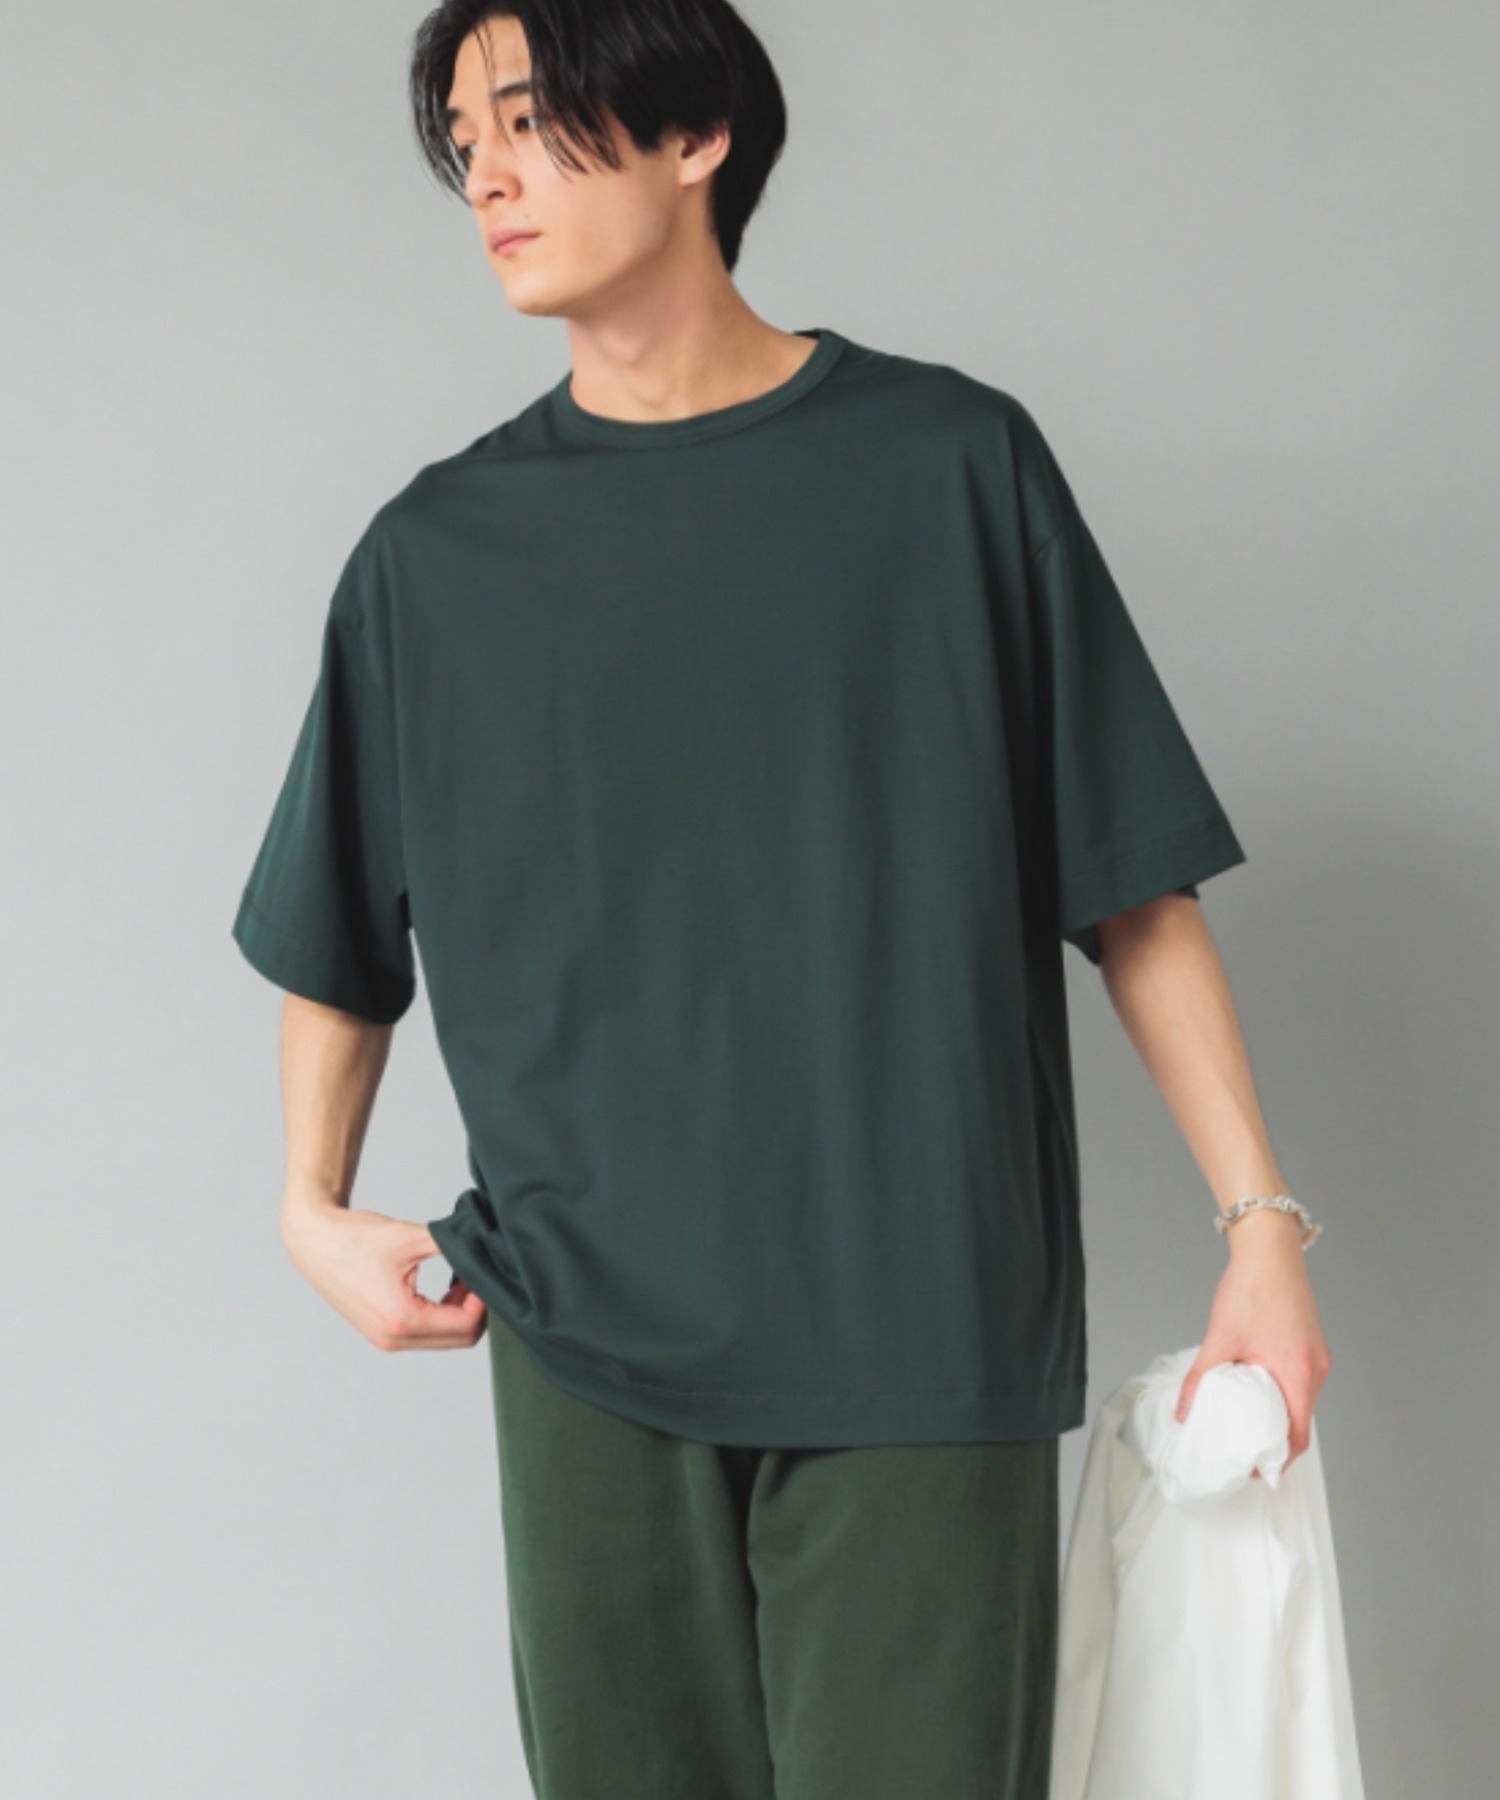 NewAnce】Oversized T Shirt オーバーサイズシルケットTシャツ